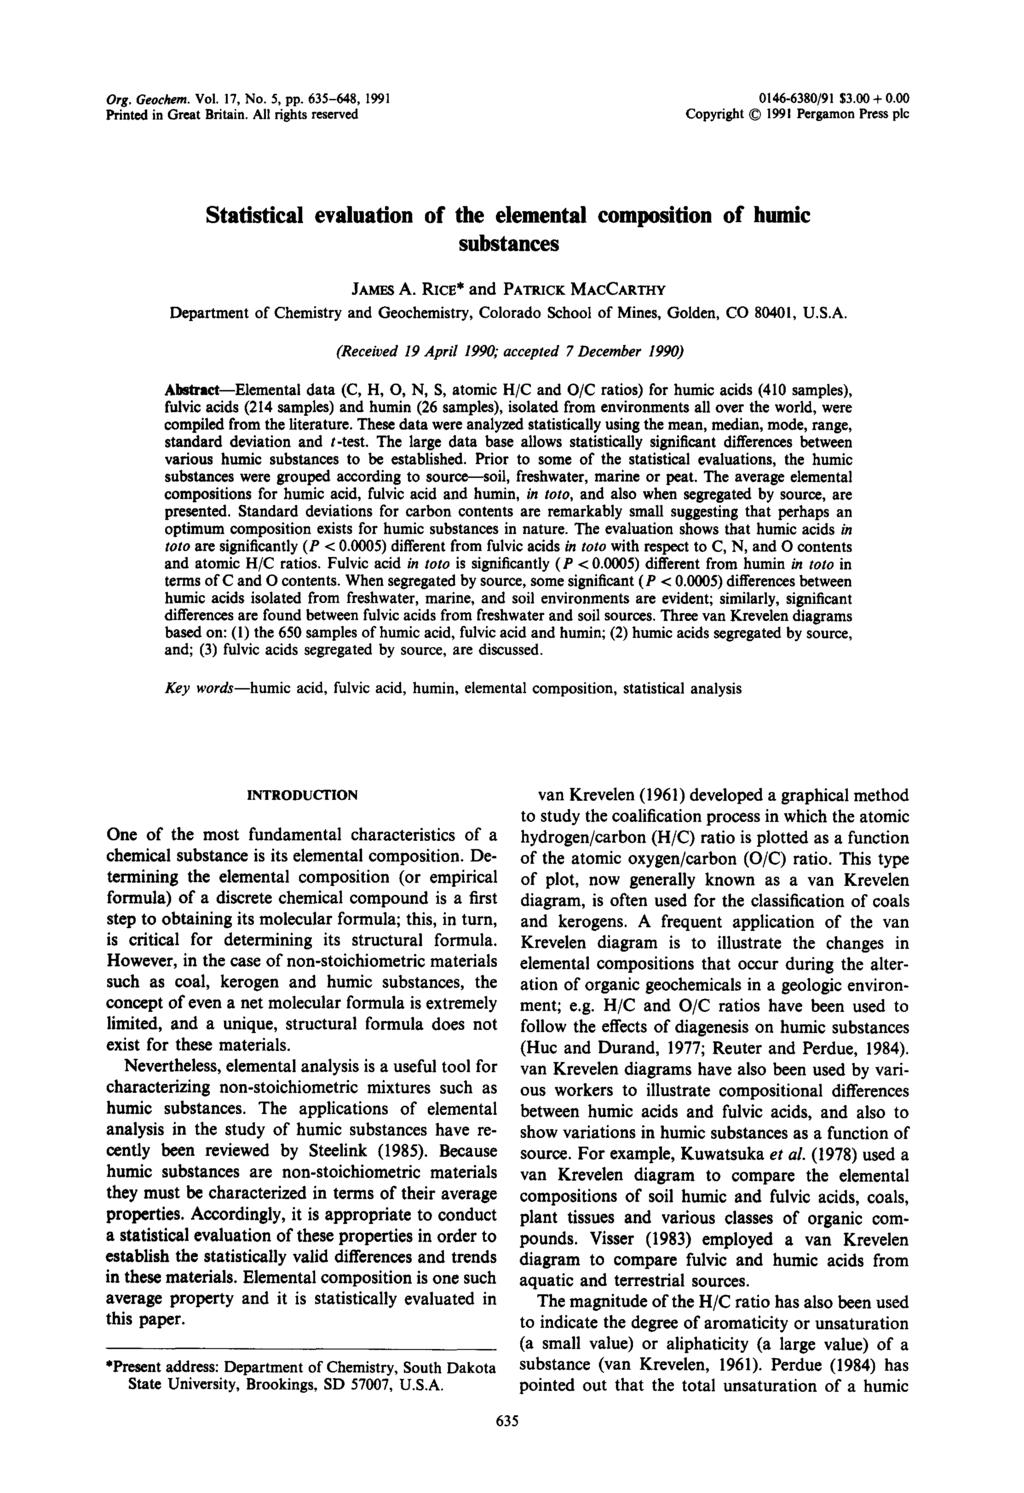 Org. Gechem. Vl. 17, N. 5, pp. 635-648, 1991 0146-6380/91 $3.00 + 0.00 Printed in Great Britain.